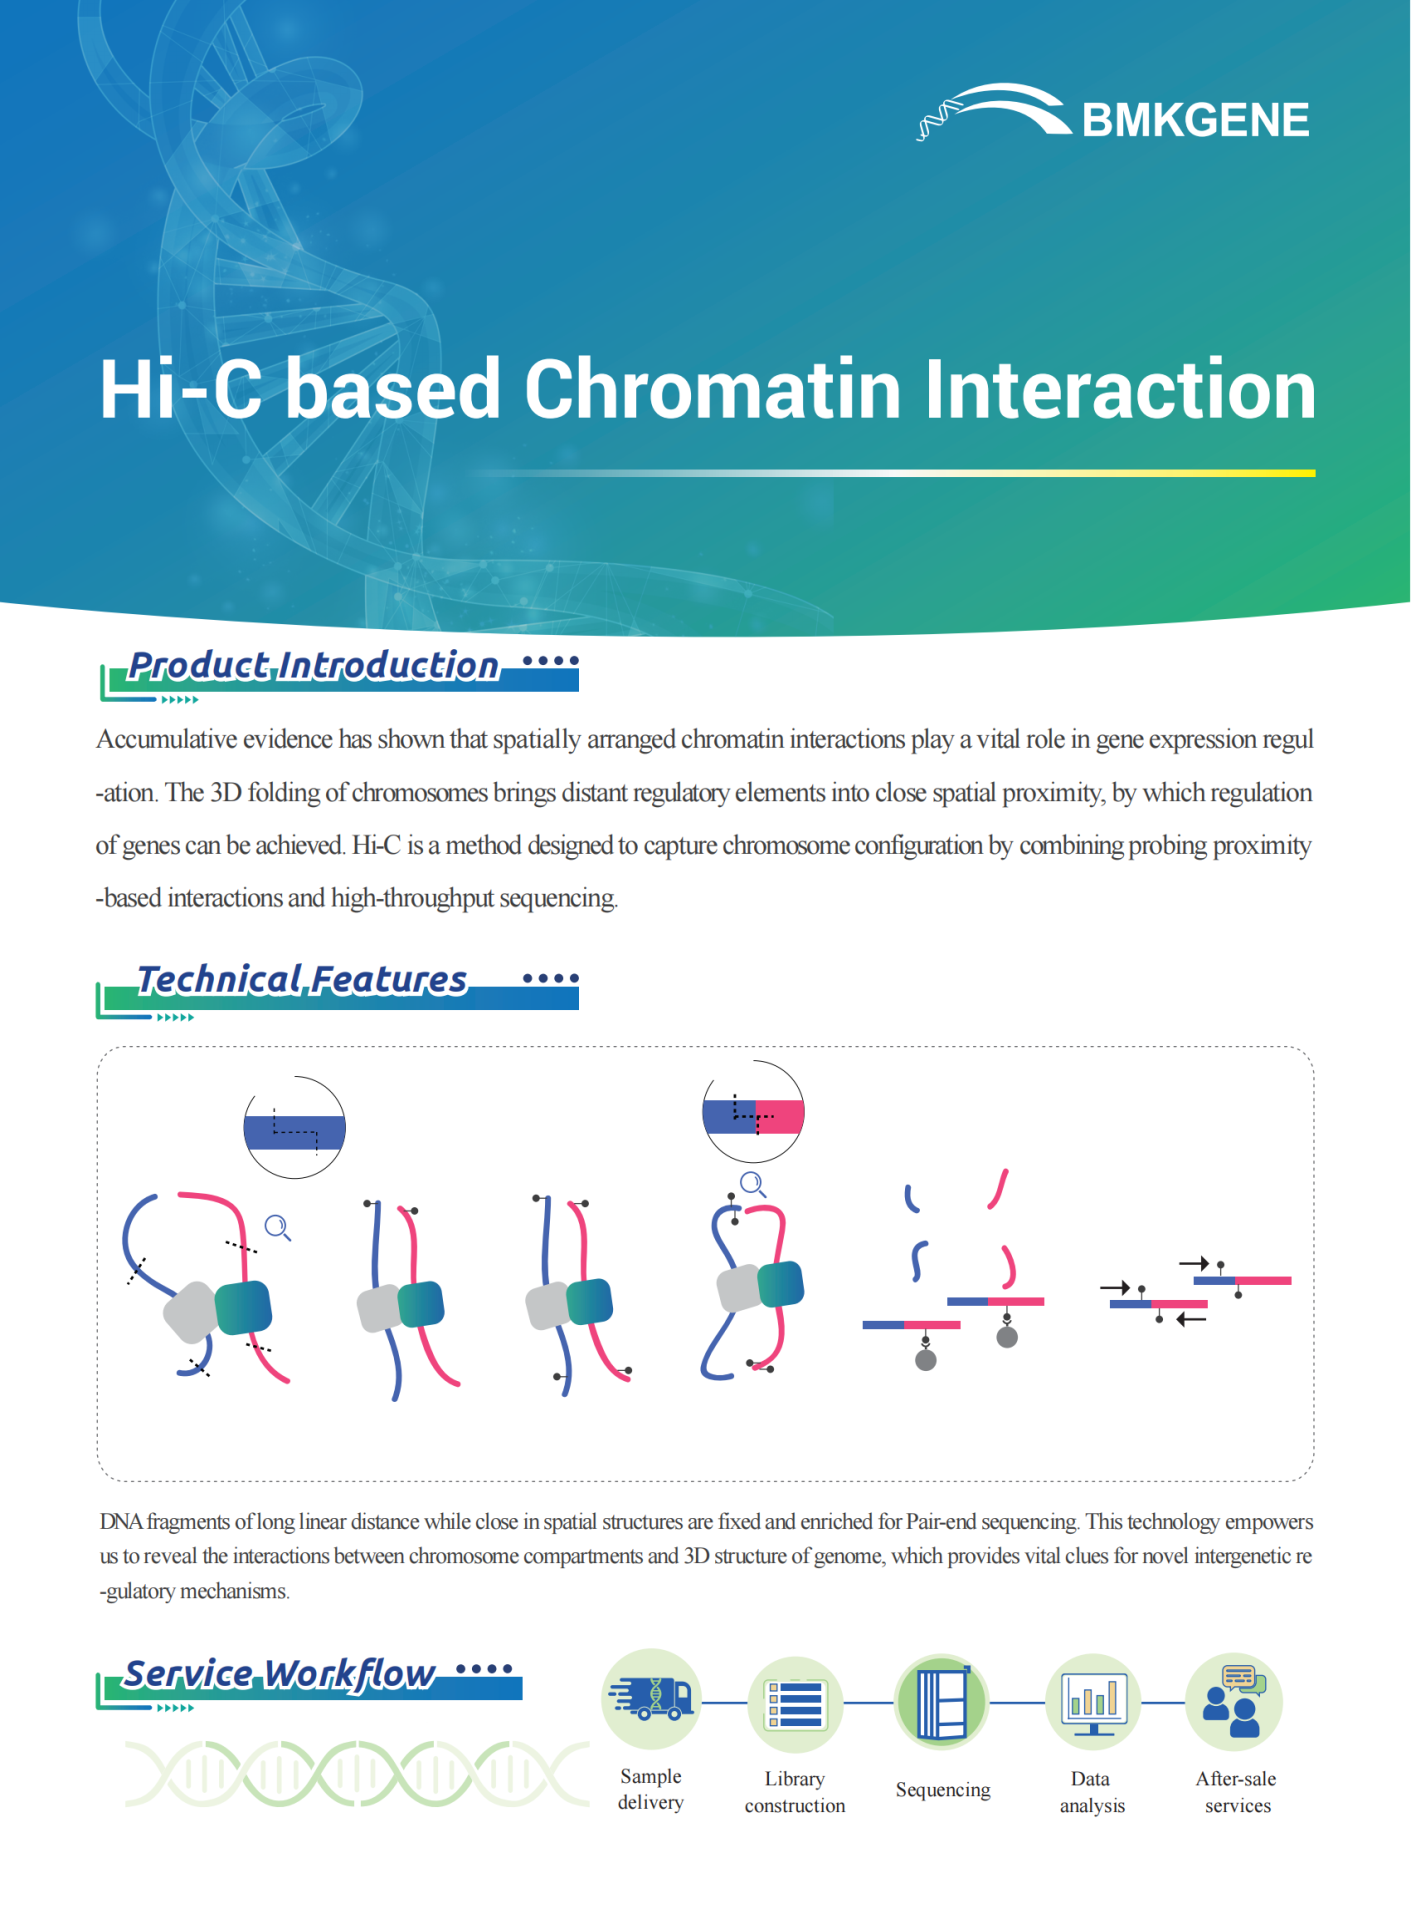 http://www.bmkgene.com/uploads/Hi-C-based-Chromatin-Interaction-BMKGENE-2023.125.pdf